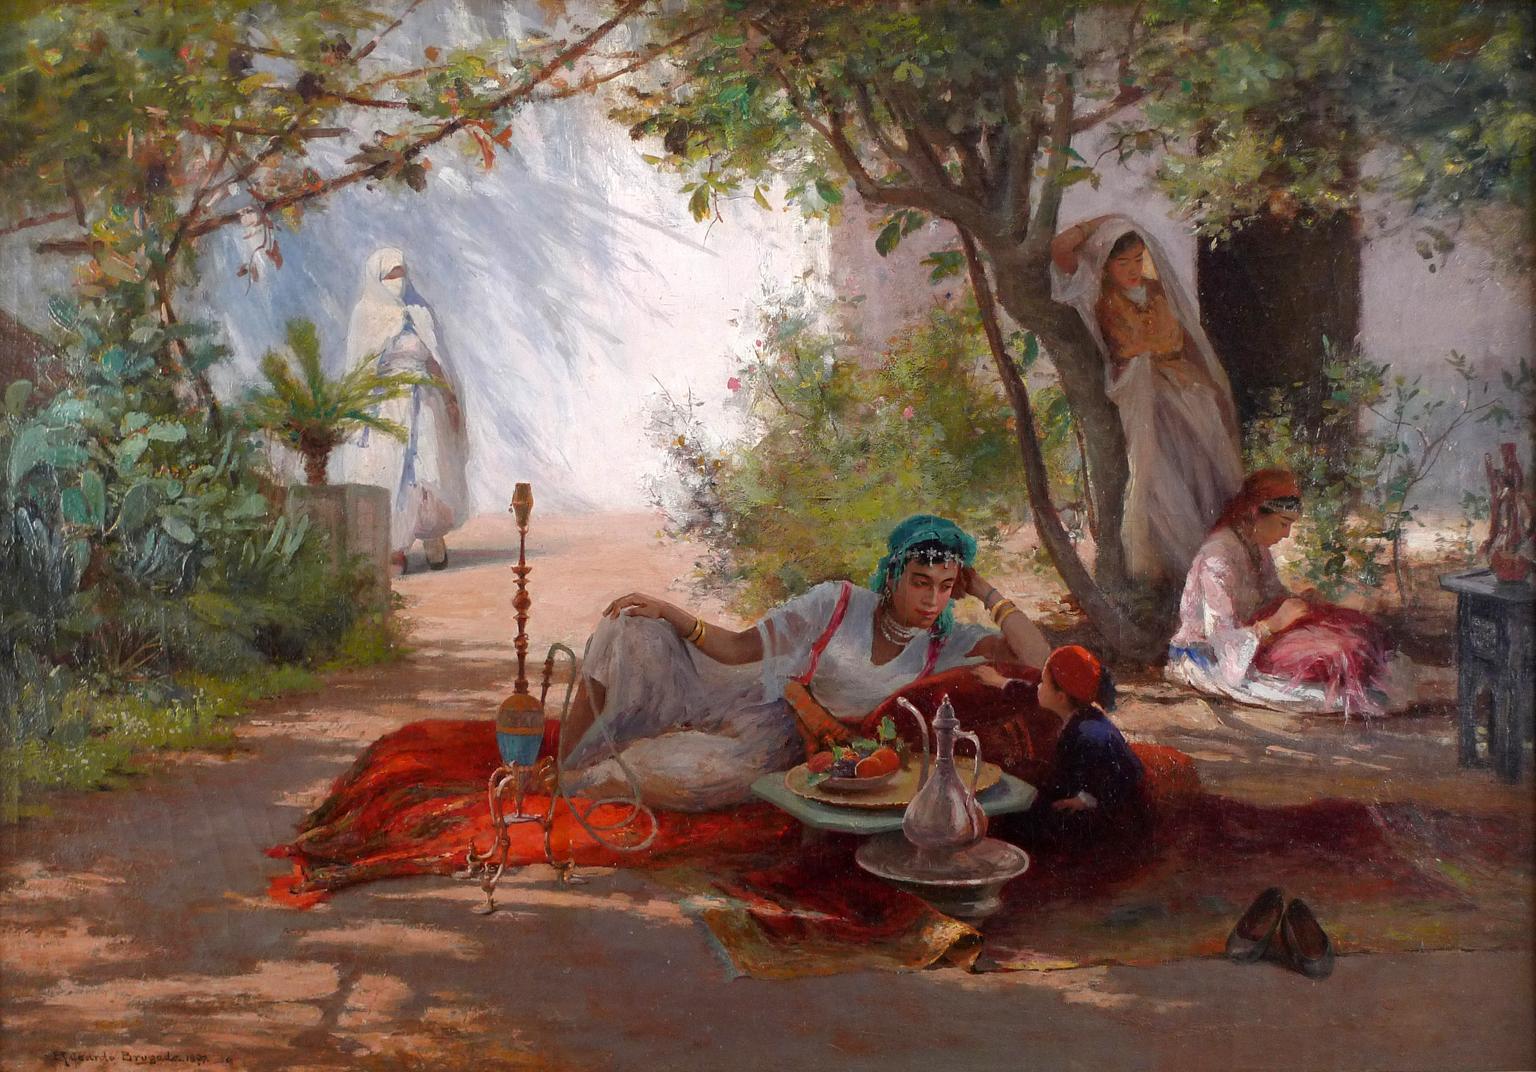 "La hora del té", 19th Century oil on canvas by Ricardo Brugada y Panizo